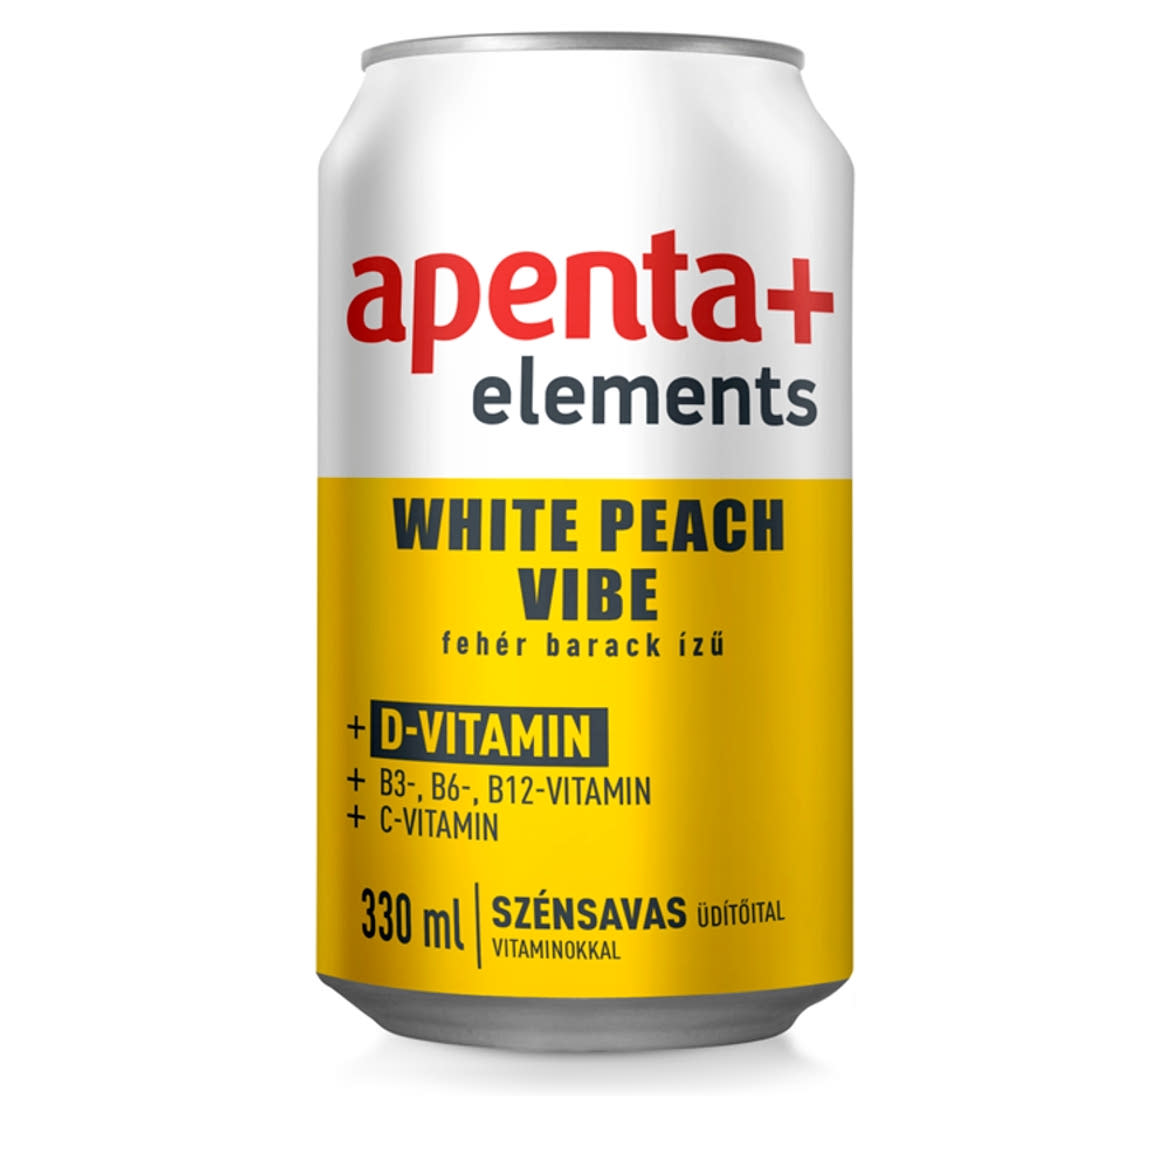 Apenta+ Elements White Peach Vibe fehér barack ízű szénsavas üdítőital vitaminokkal